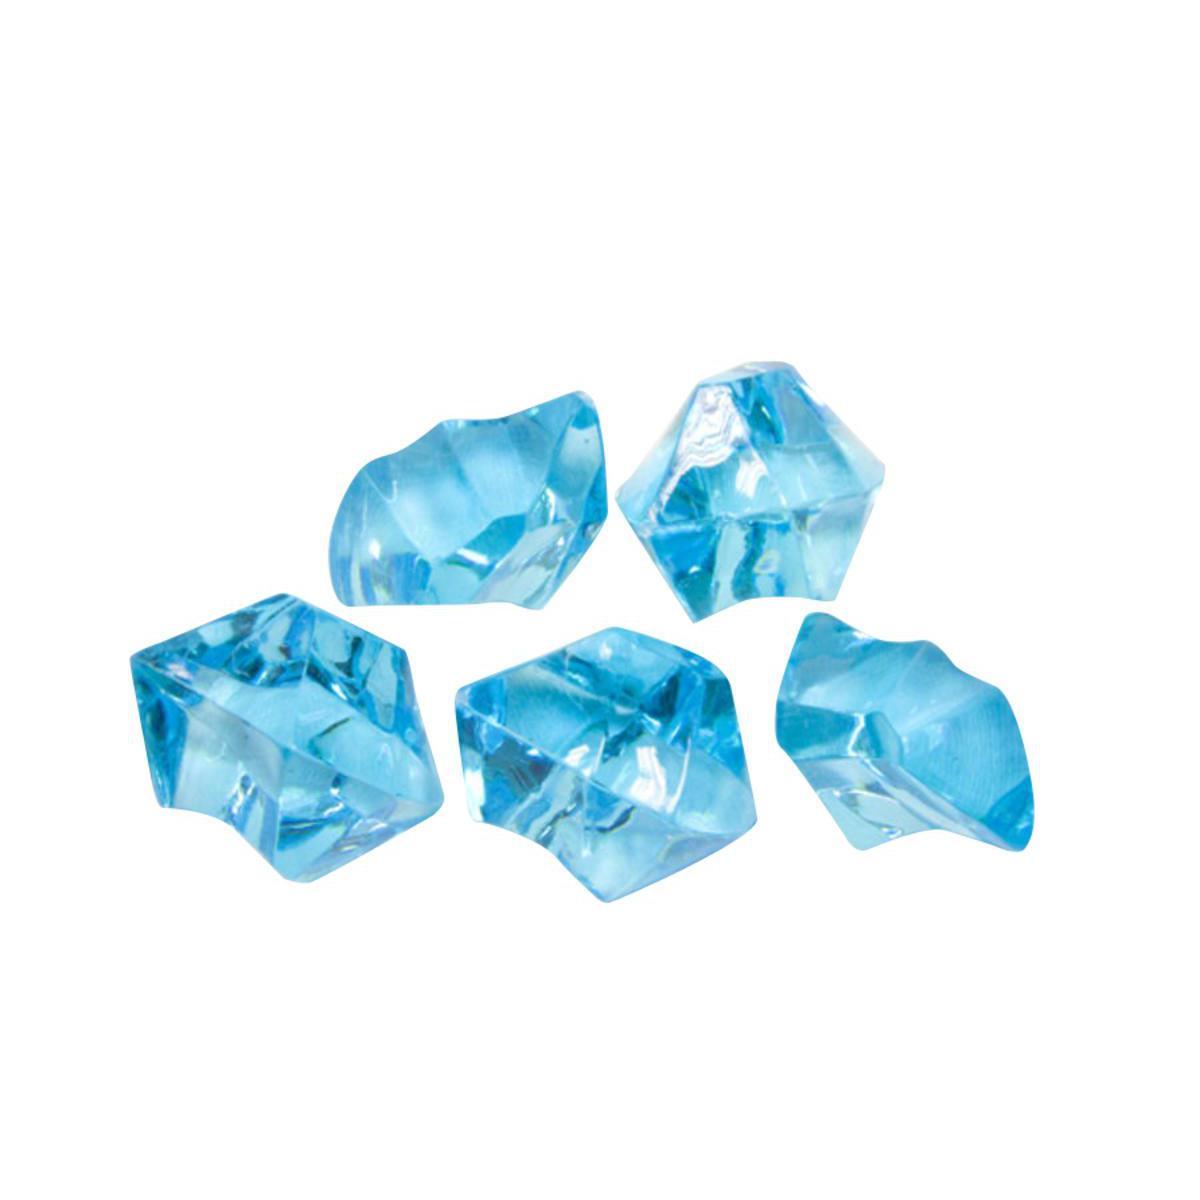 Pierres en cristal décoratives - Plastique - 100 gr. - Bleu turquoise